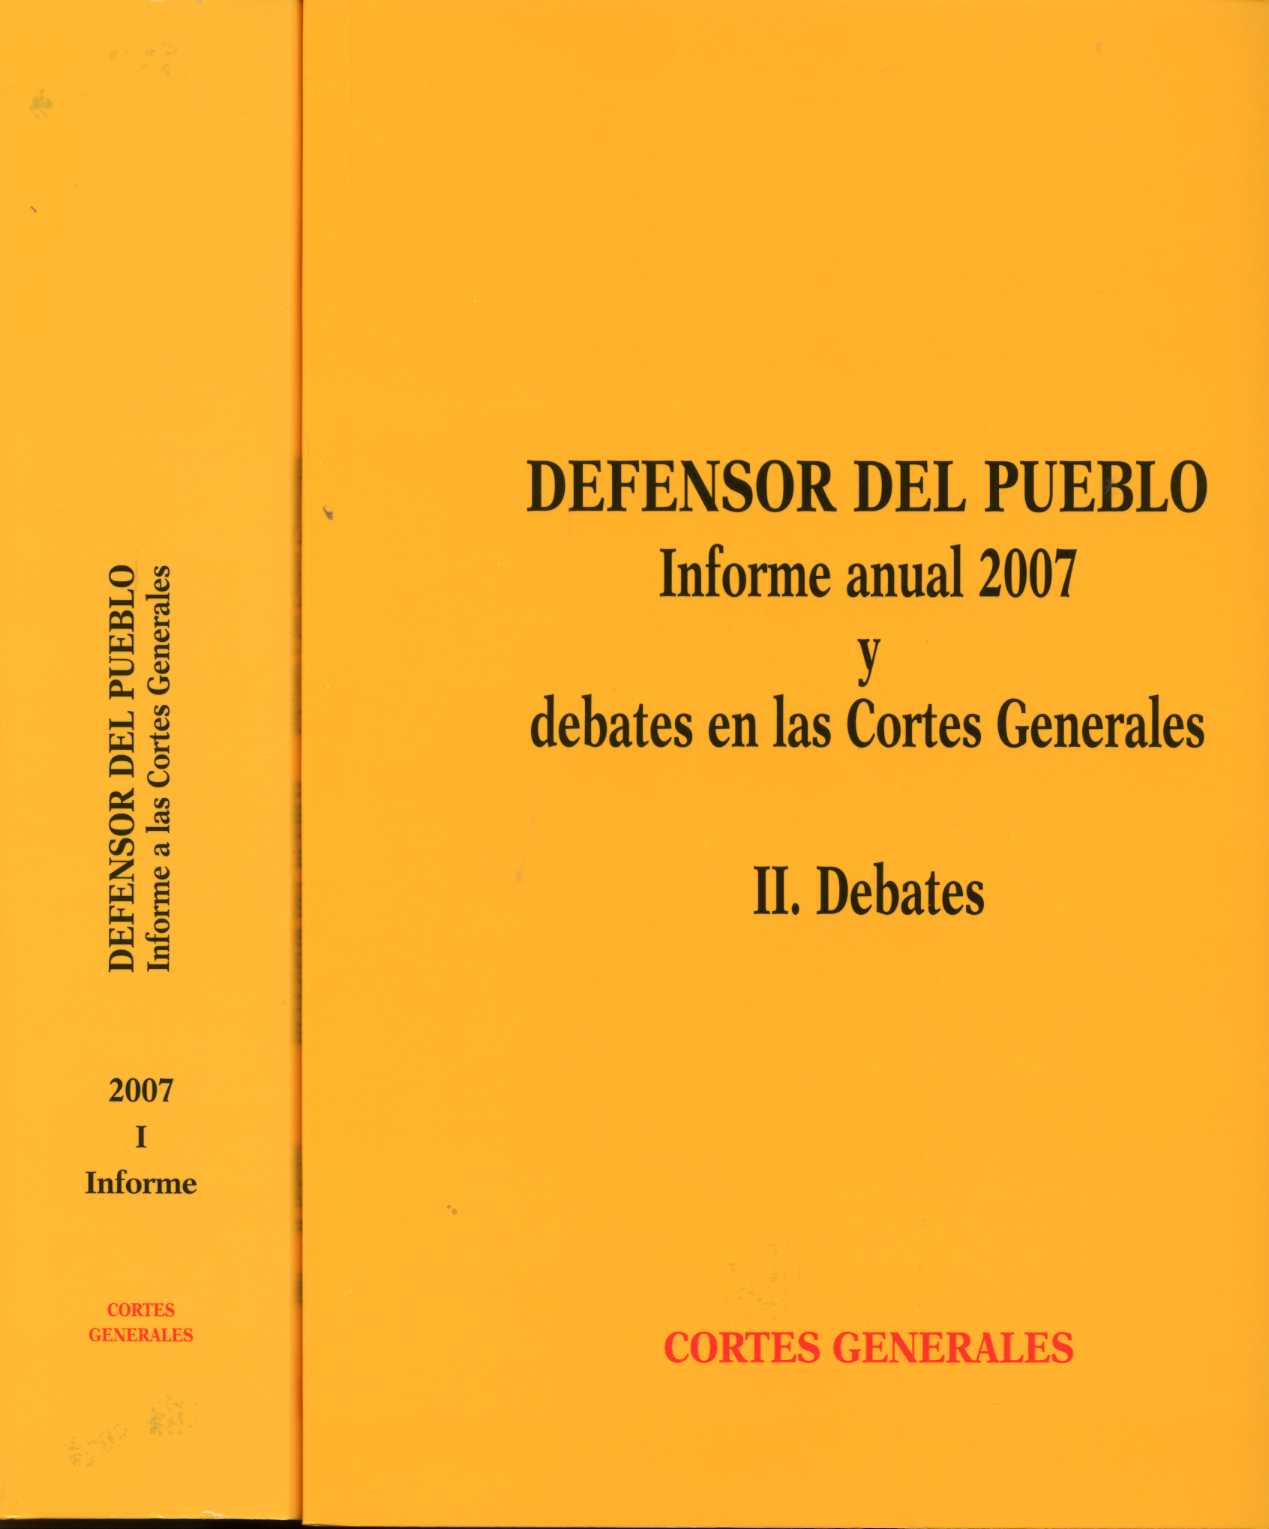 Defensor del Pueblo. Informe a las Cortes Generales 2007. 2 Vols. I. Informe. II Debates.-0